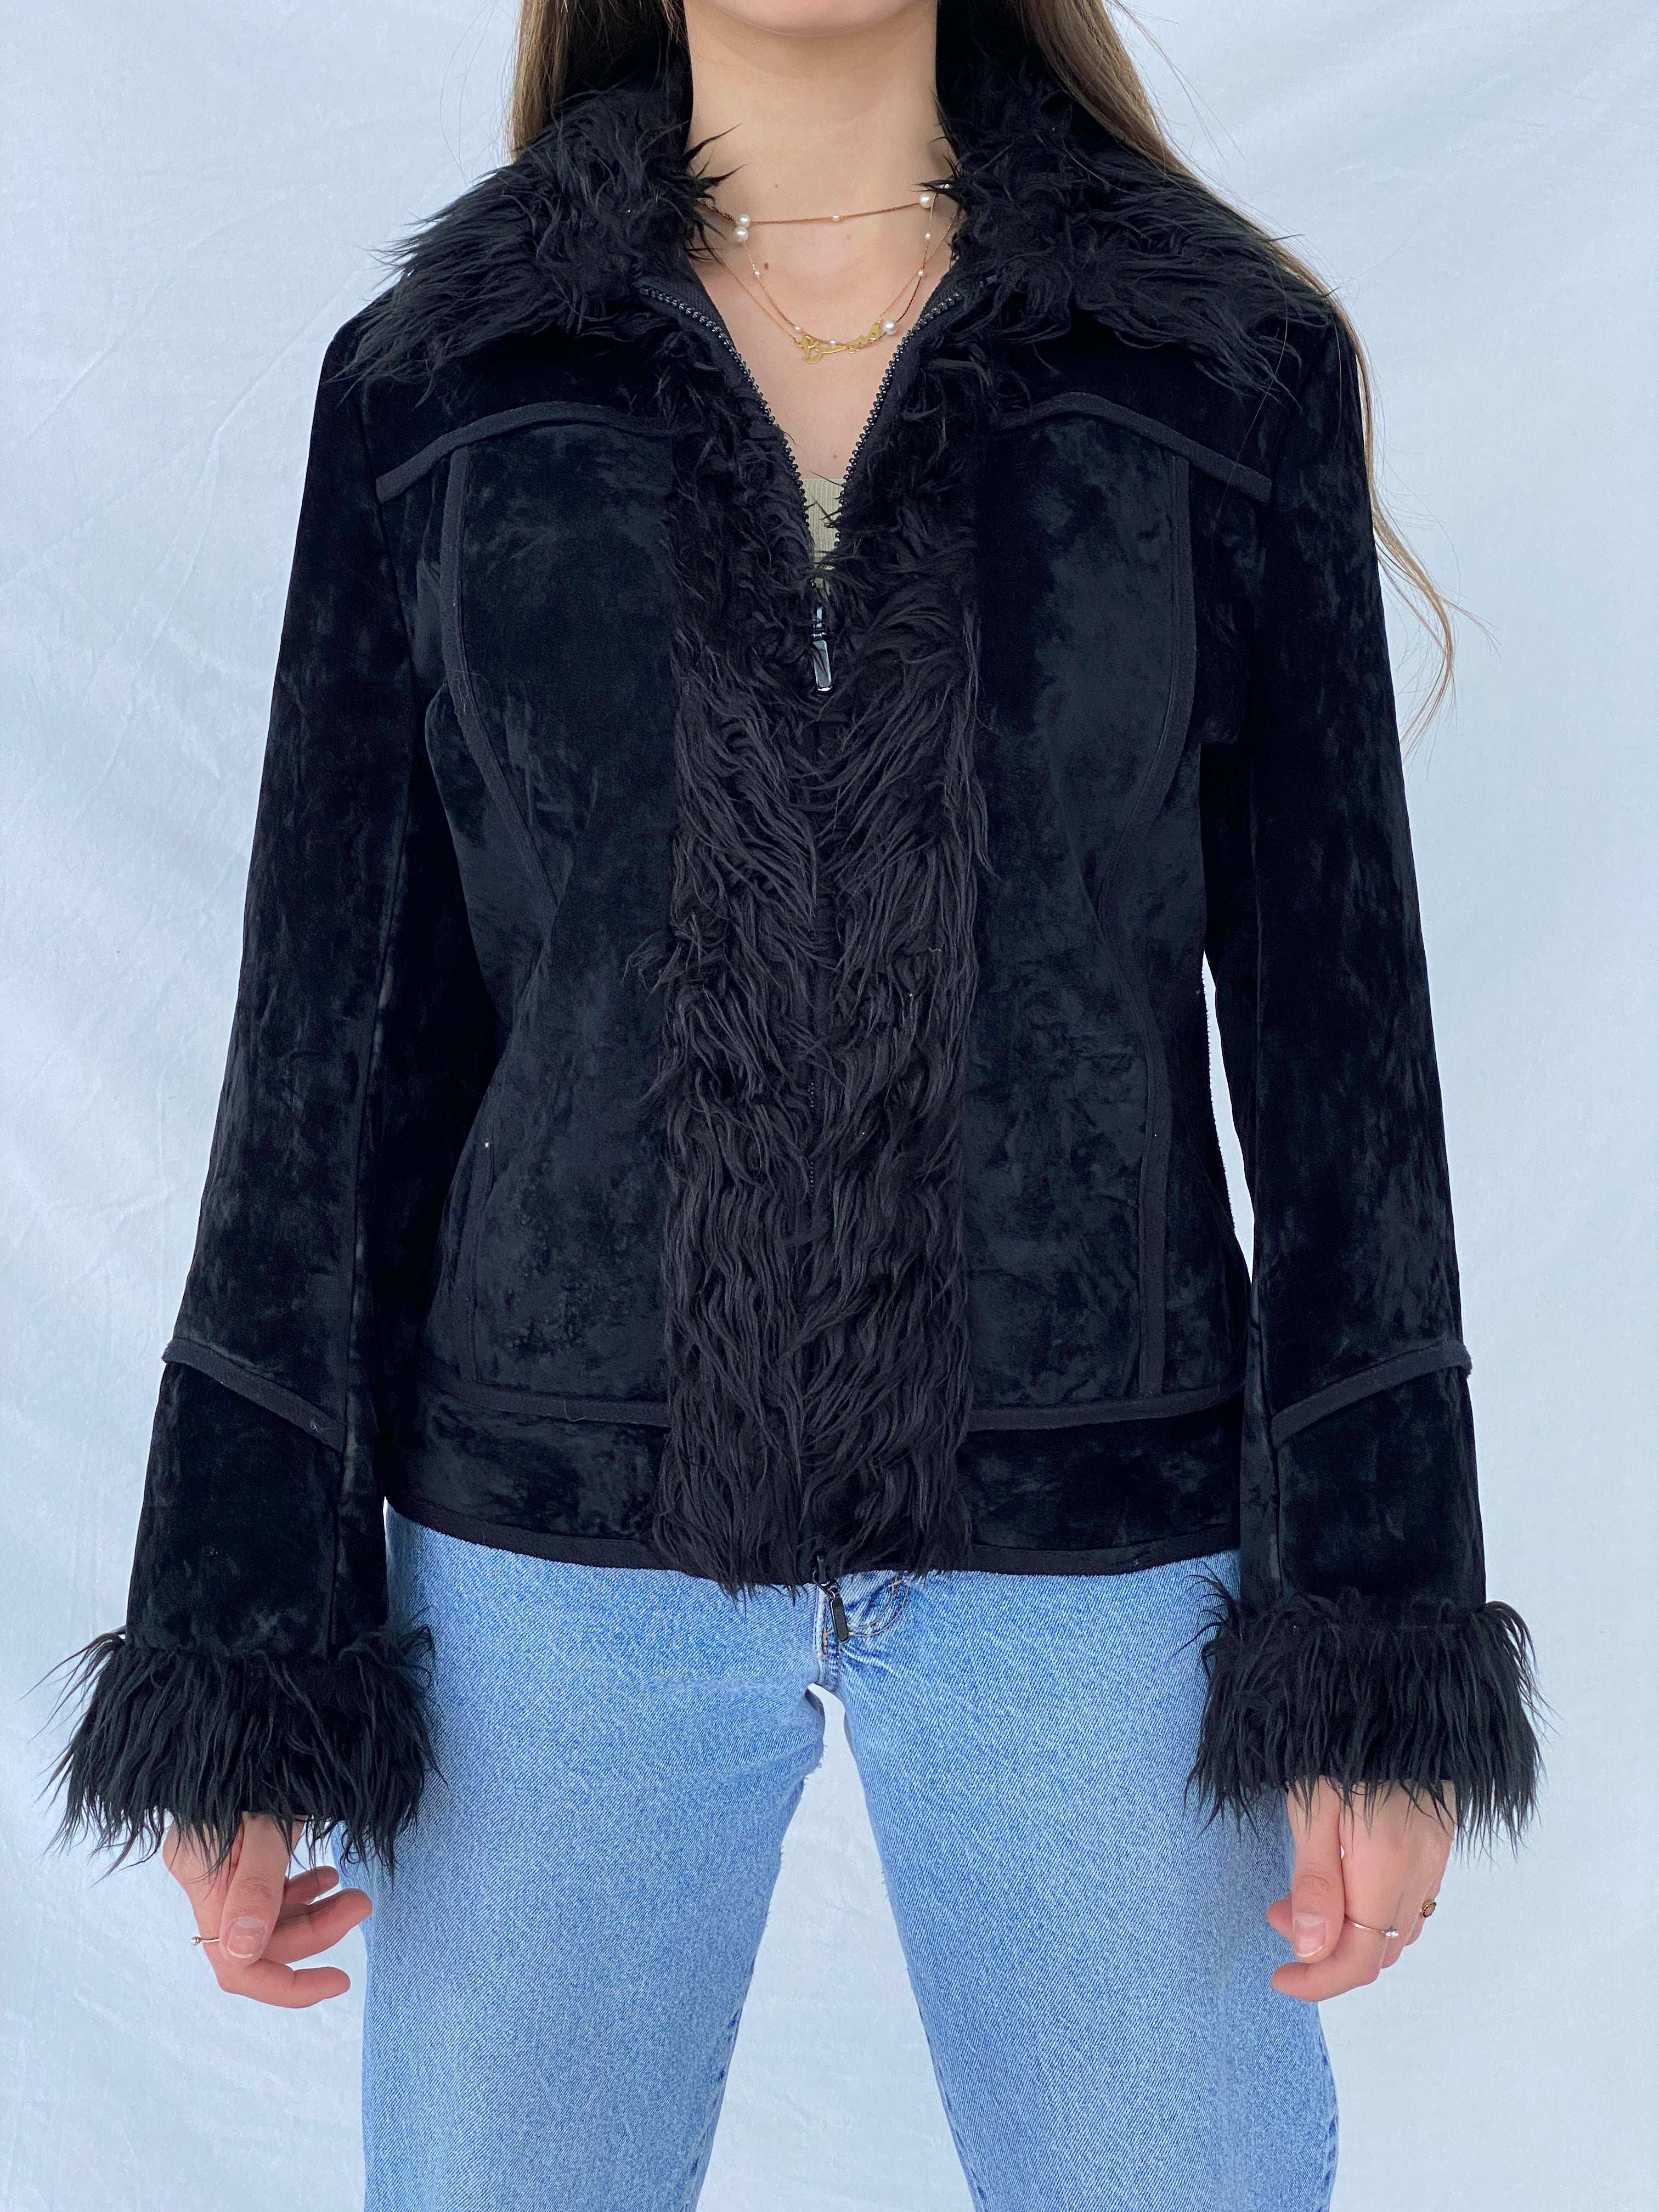 Beautiful Vintage Y2K Miss Eighteen Afghan Style Fur-Lined Jacket - Balagan Vintage Coat 00s, Afghan style, coat, Mira, NEW IN, vintage coat